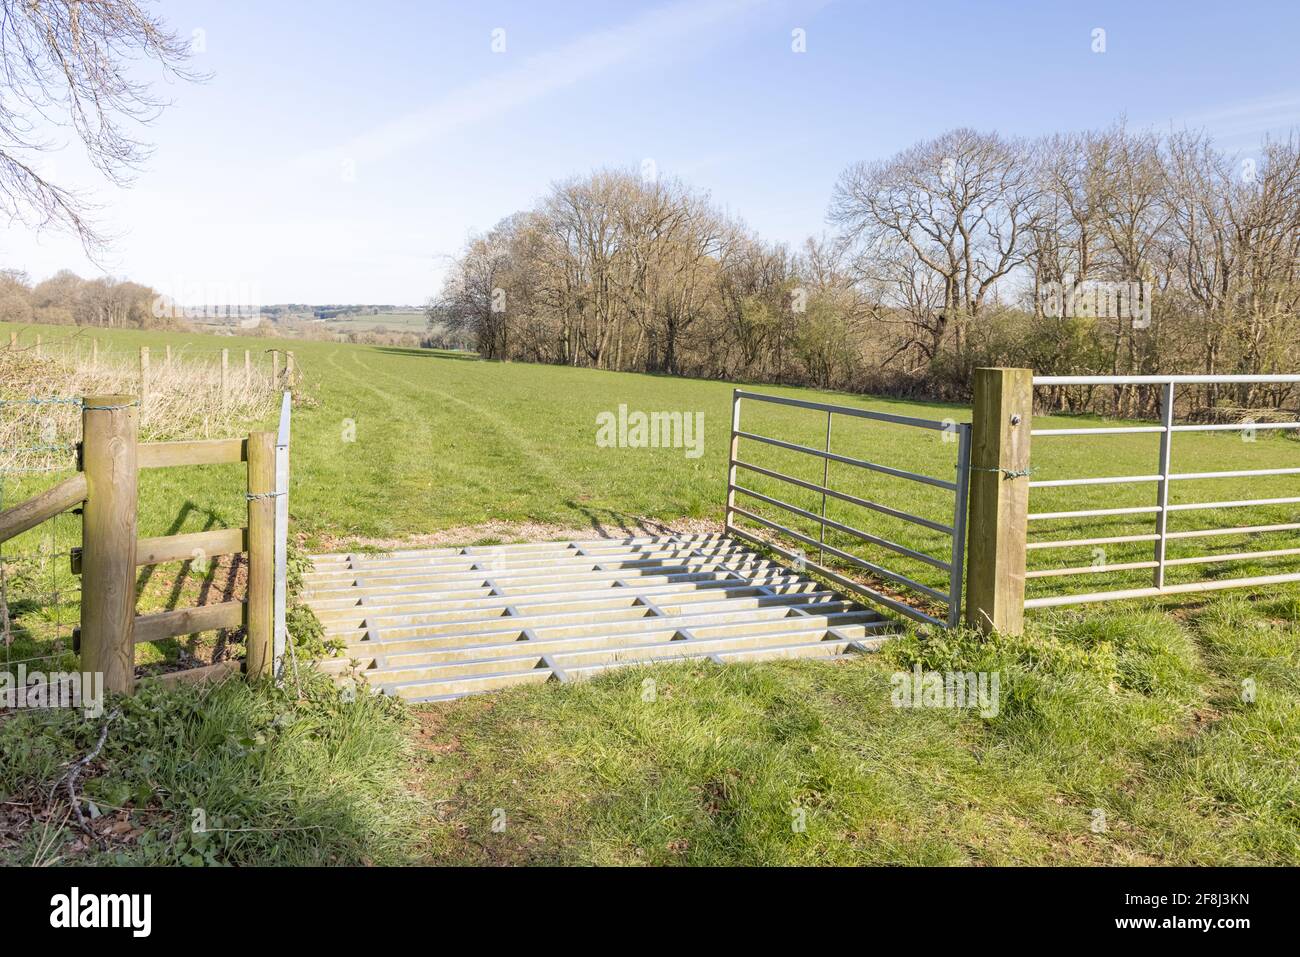 Badby, Northamptonshire, Großbritannien - 13. April 2021: Ein Rinderraster aus Metall am Eingang zu einem Weidefeld mit Spuren im Gras. Stockfoto